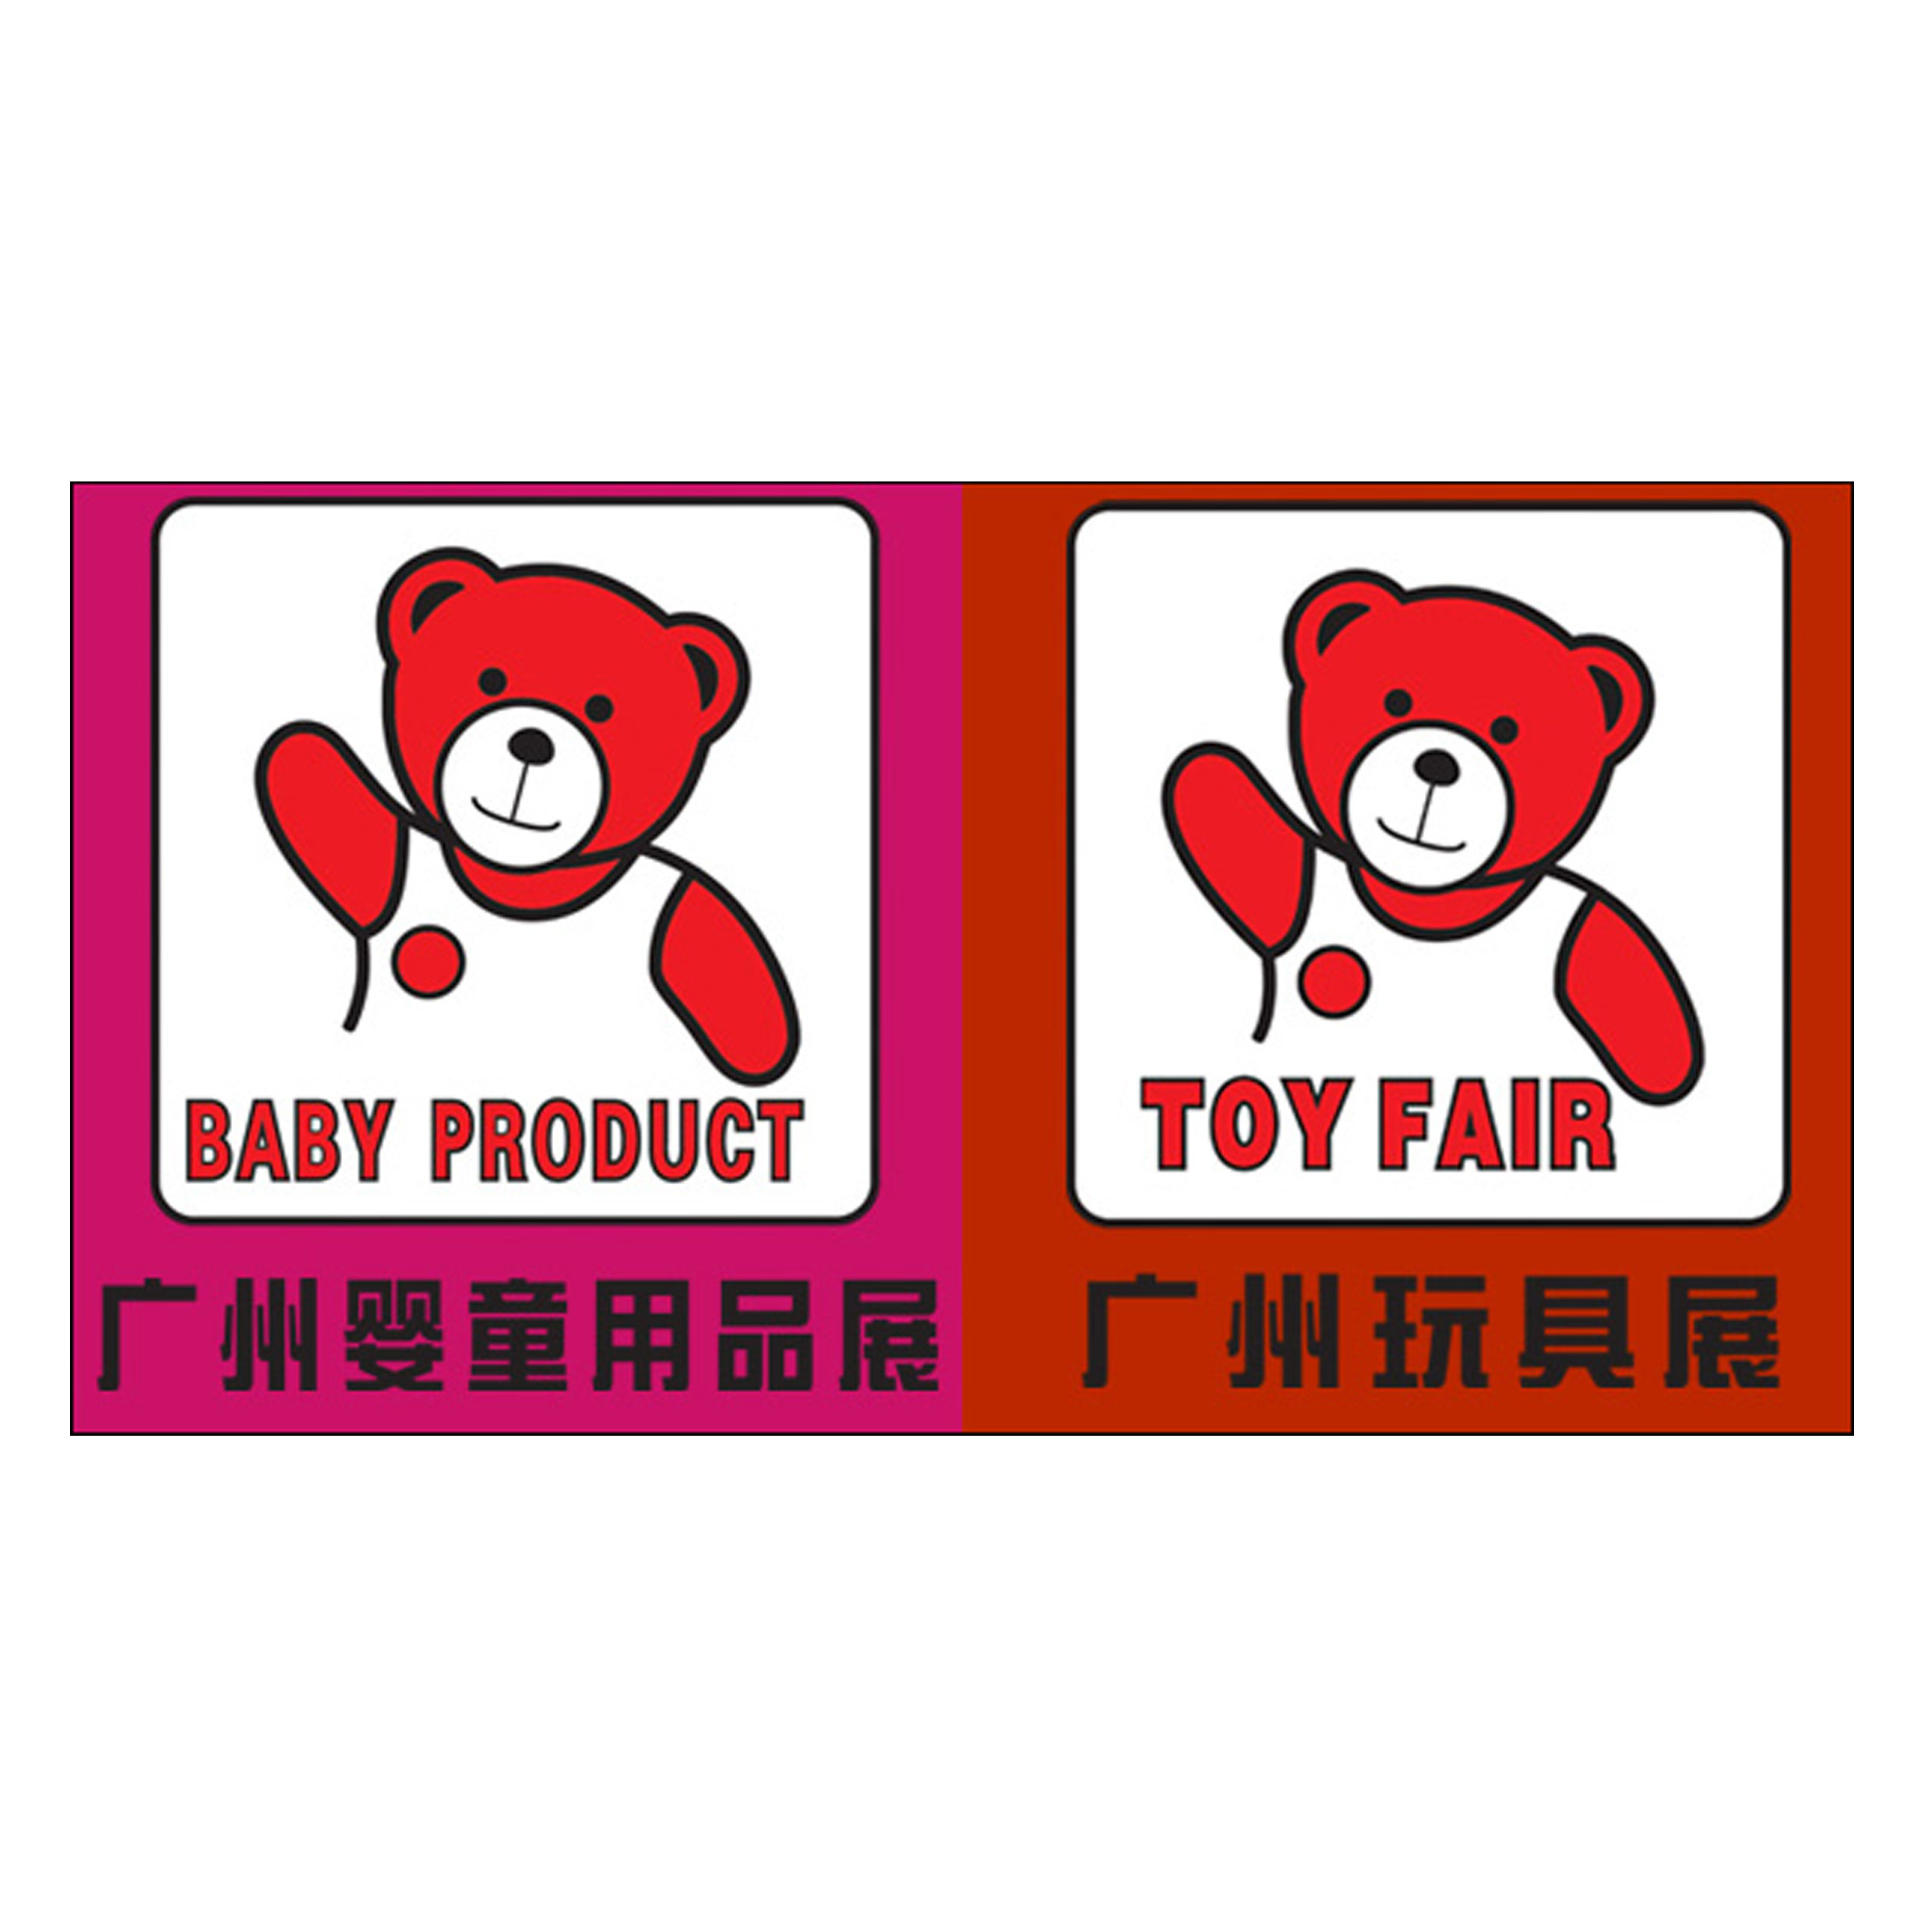 11廣東省玩具協會